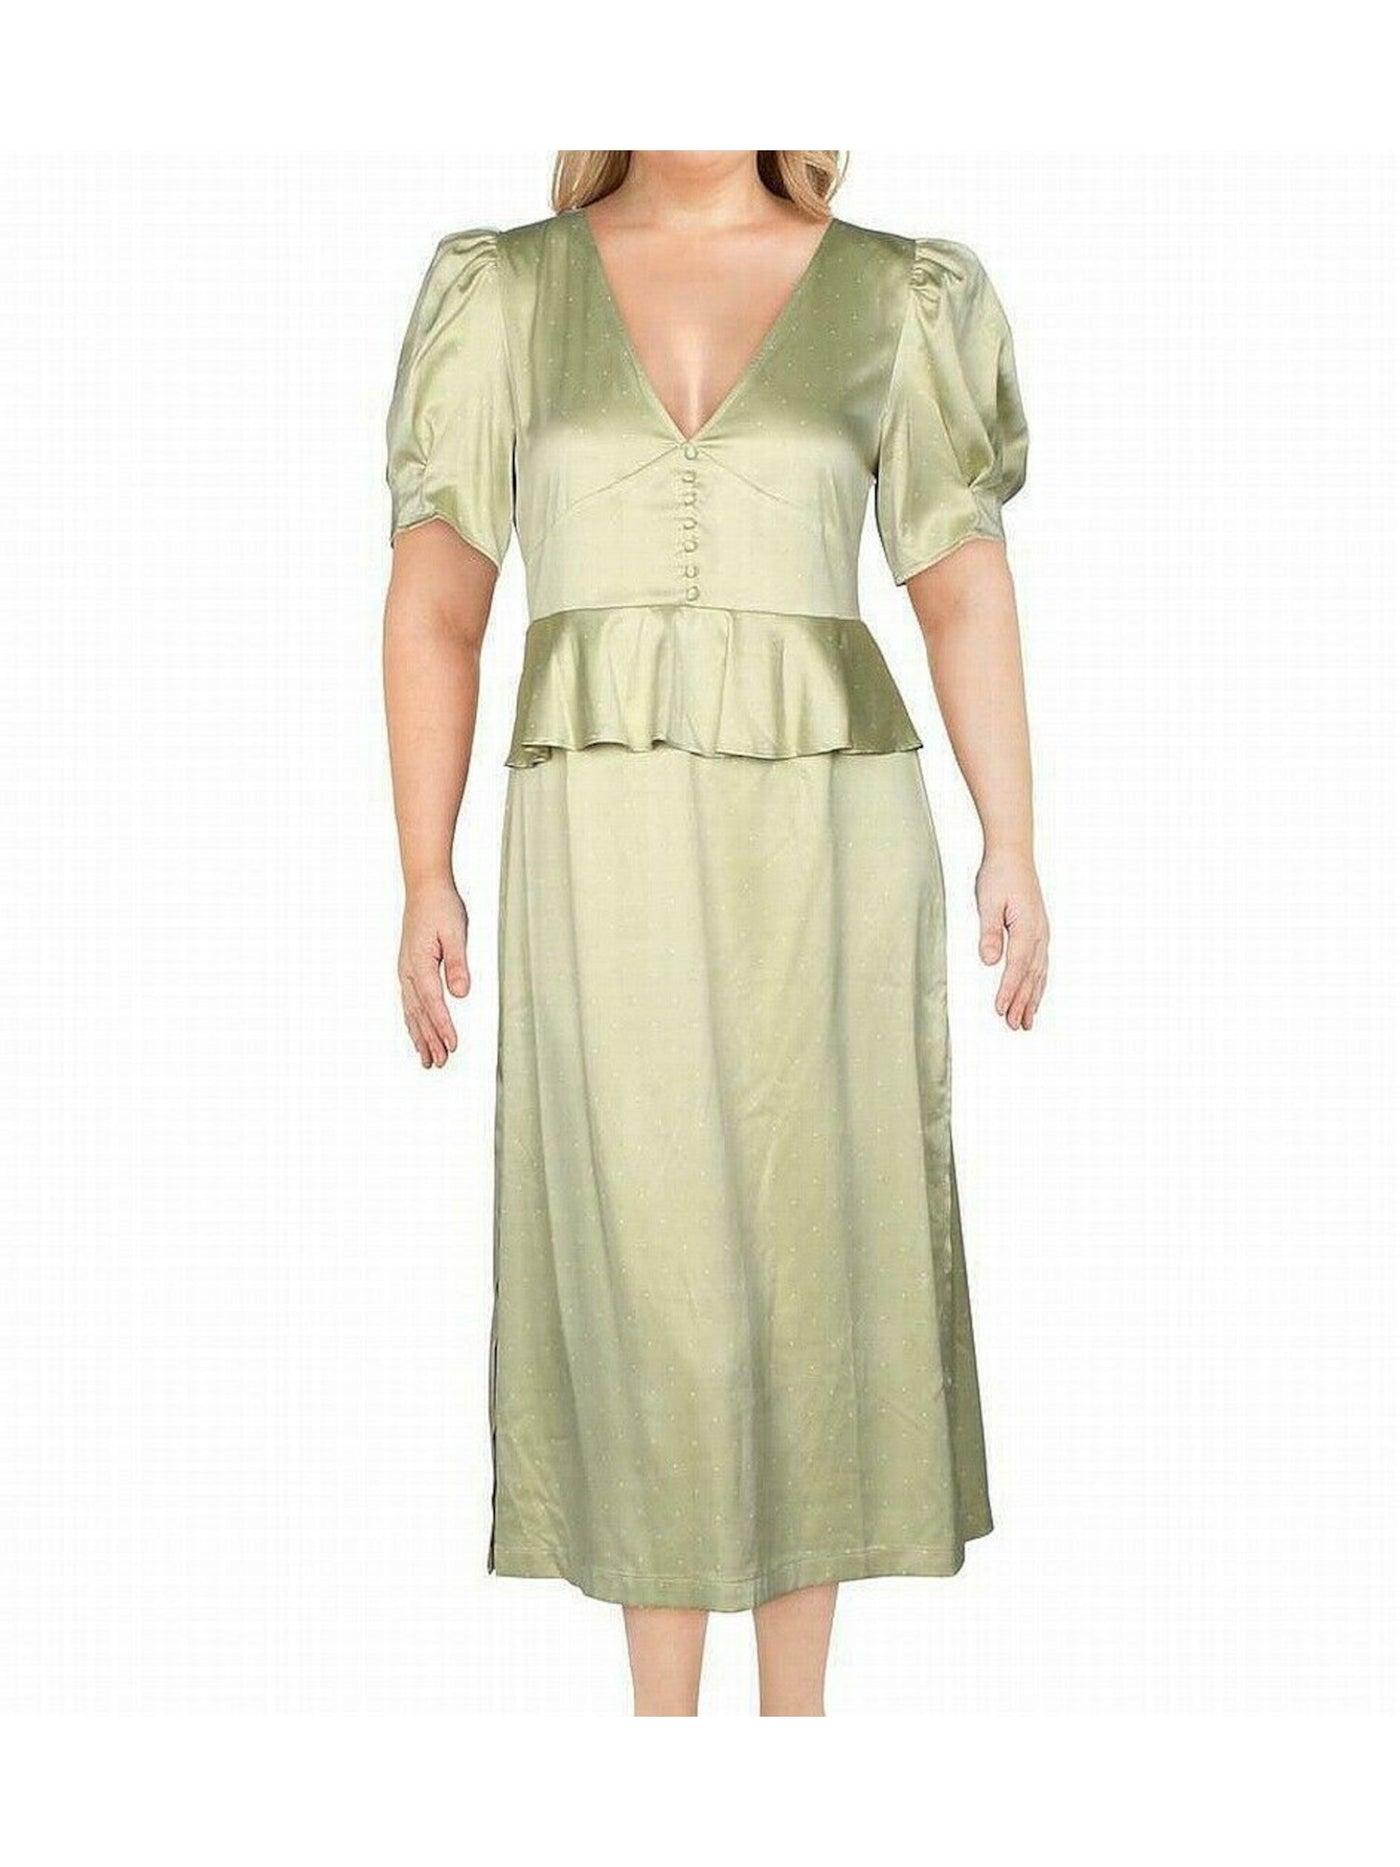 DANIELLE BERNSTEIN Womens Green Zippered Polka Dot Pouf V Neck Knee Length Wear To Work Peplum Dress 0